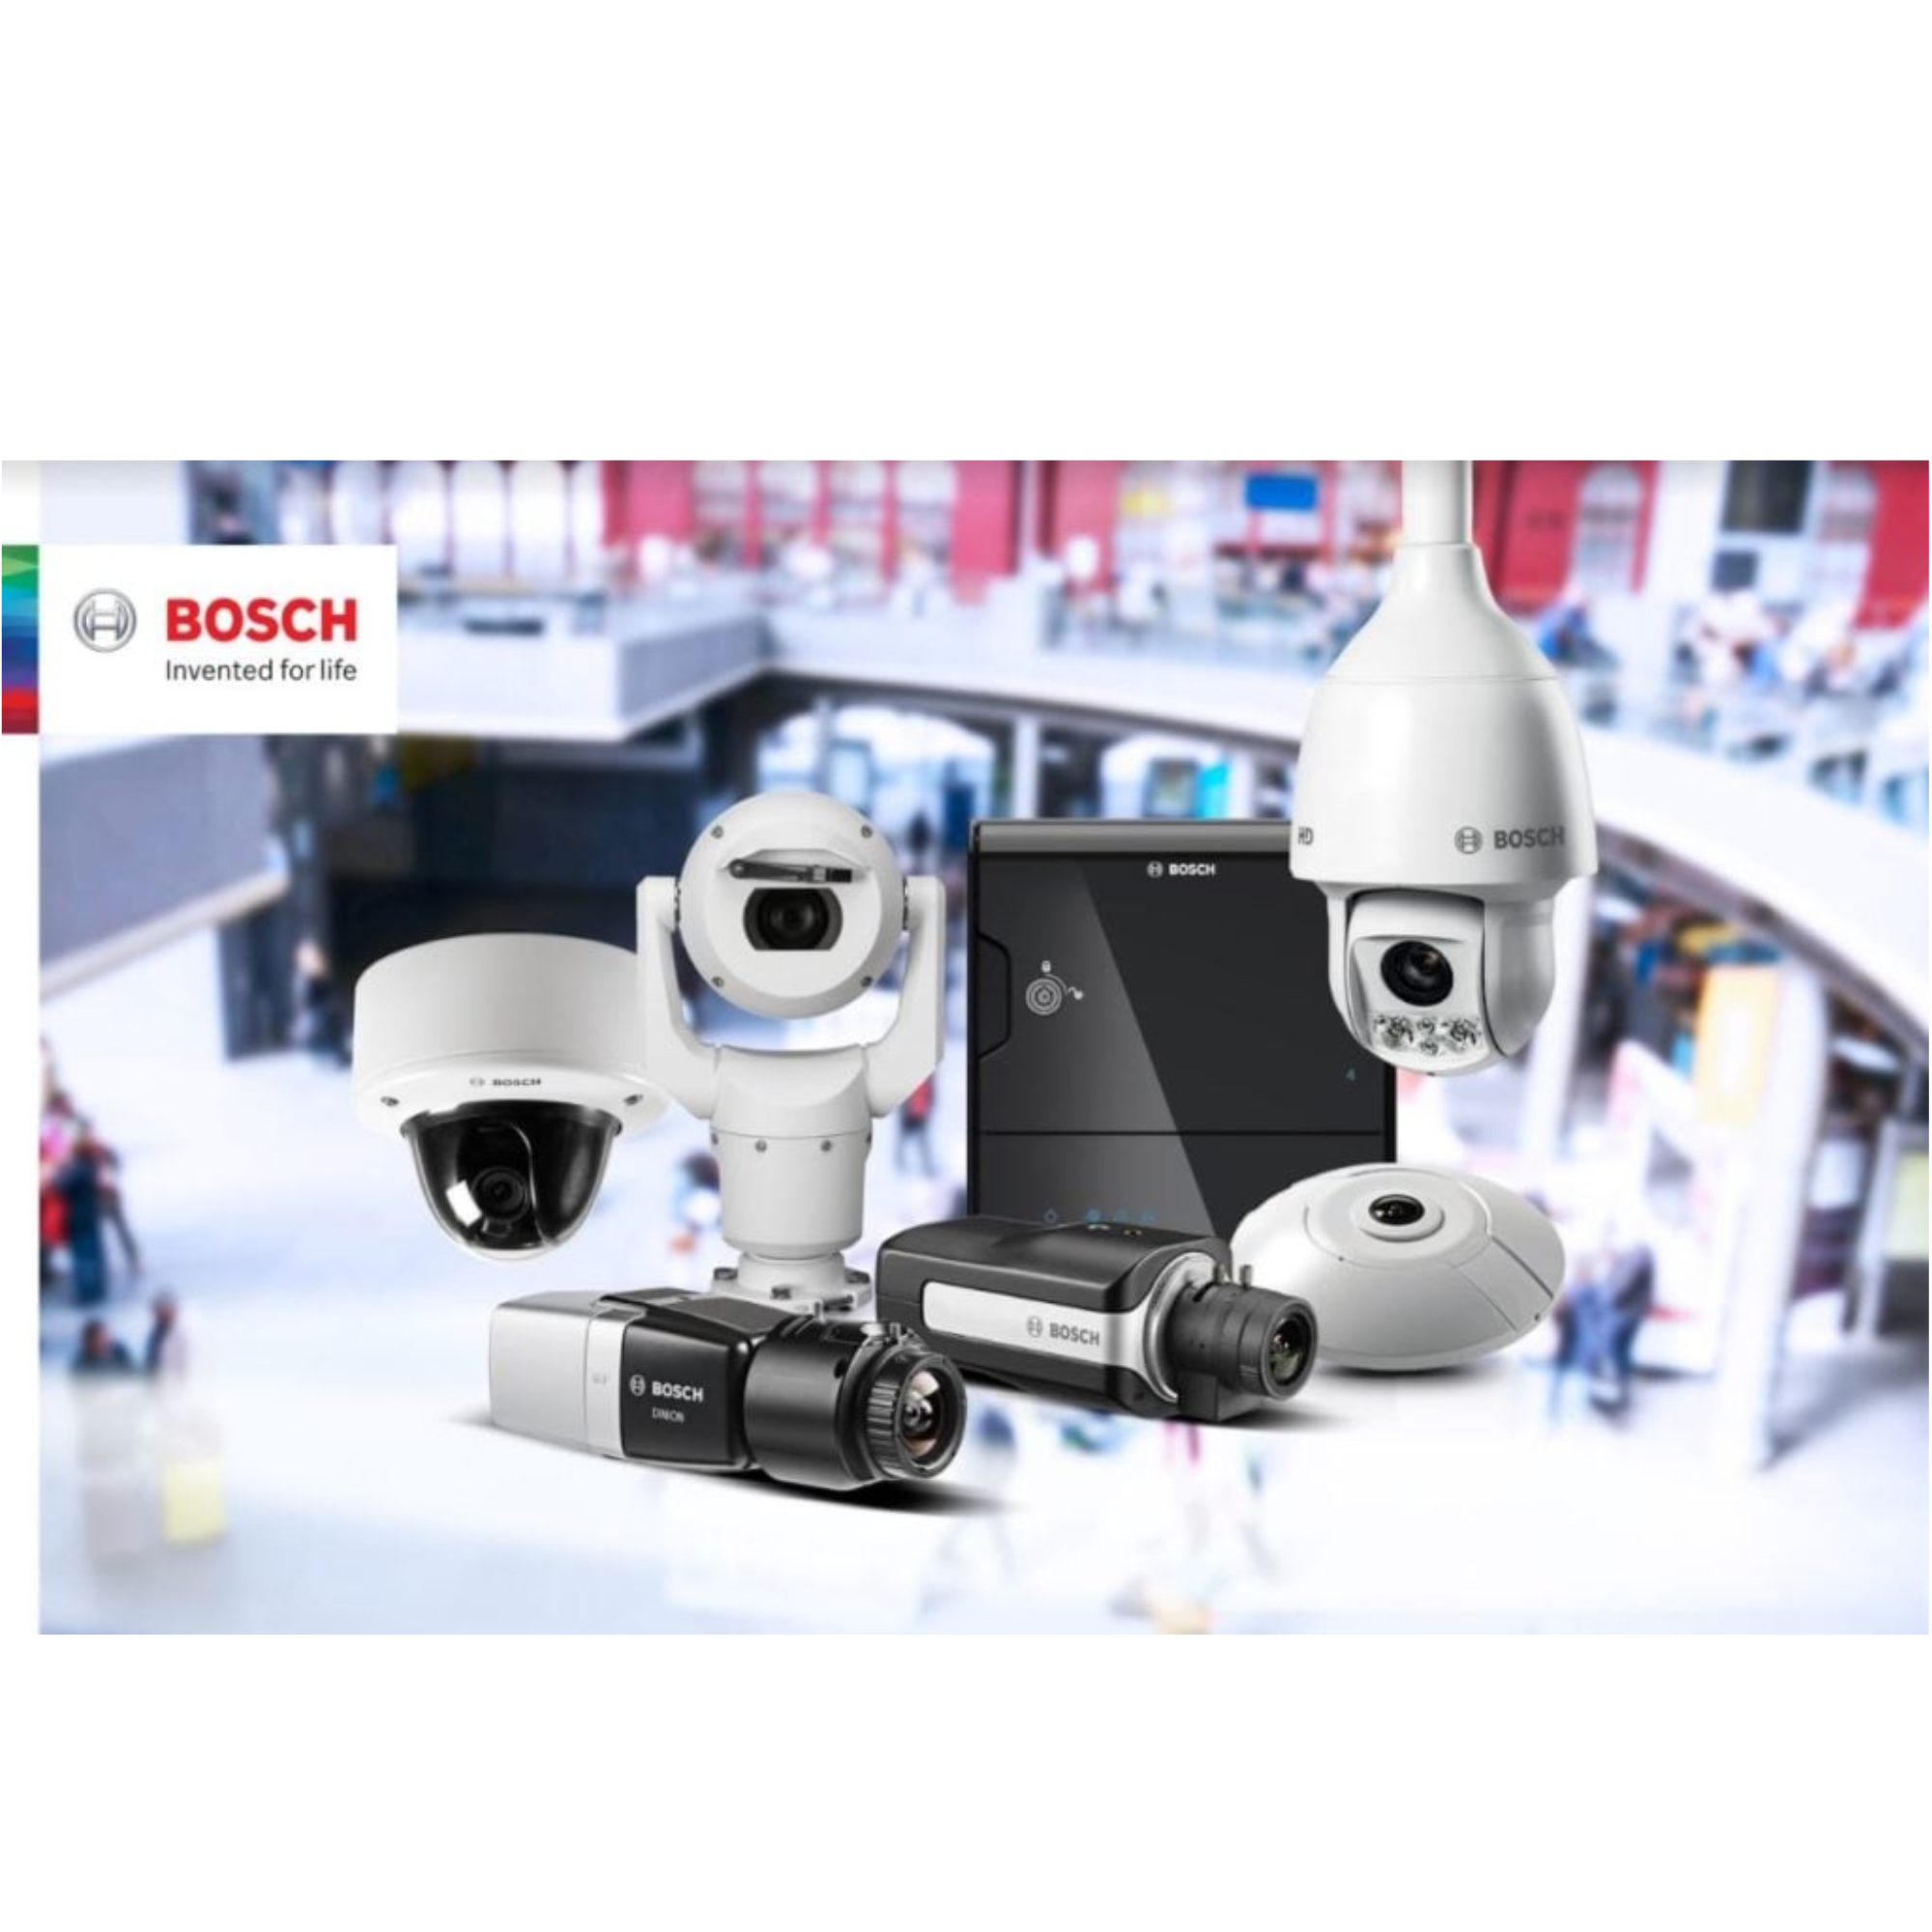 Bosch - Surveillance Clearance